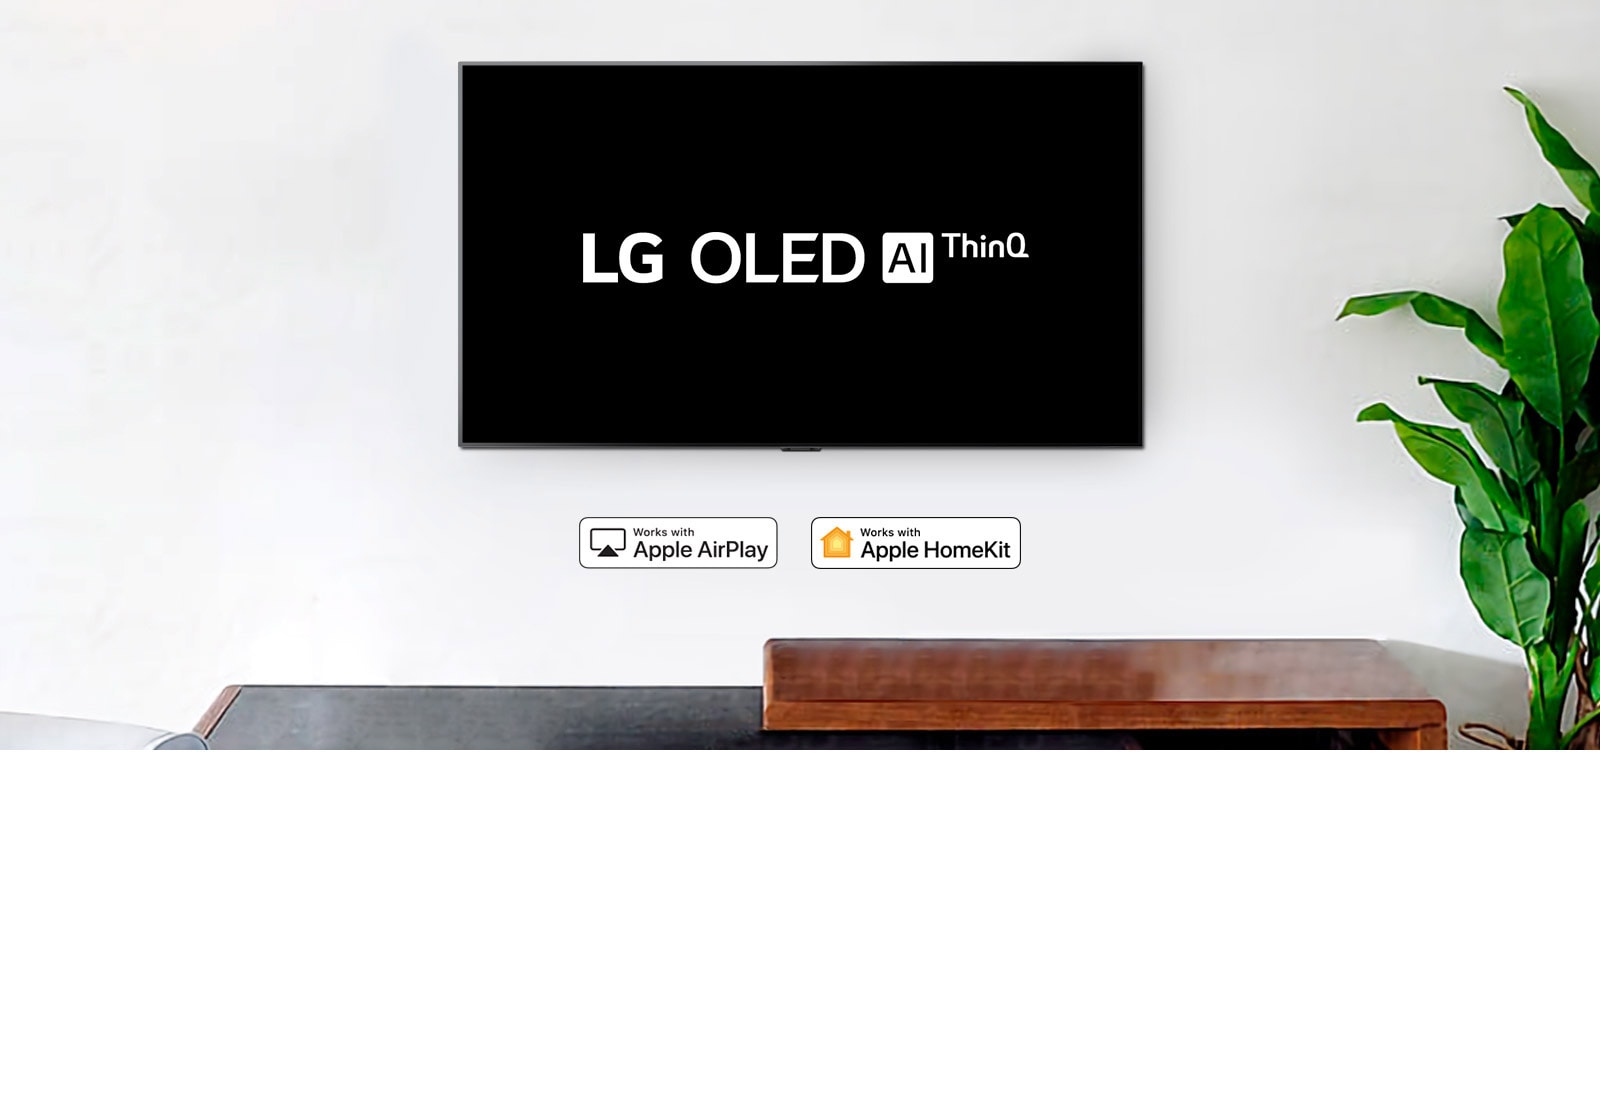 تلفزيون مثبت على الحائط يعرض شعار LG OLED بتقنية AI ThinQ على خلفية سوداء